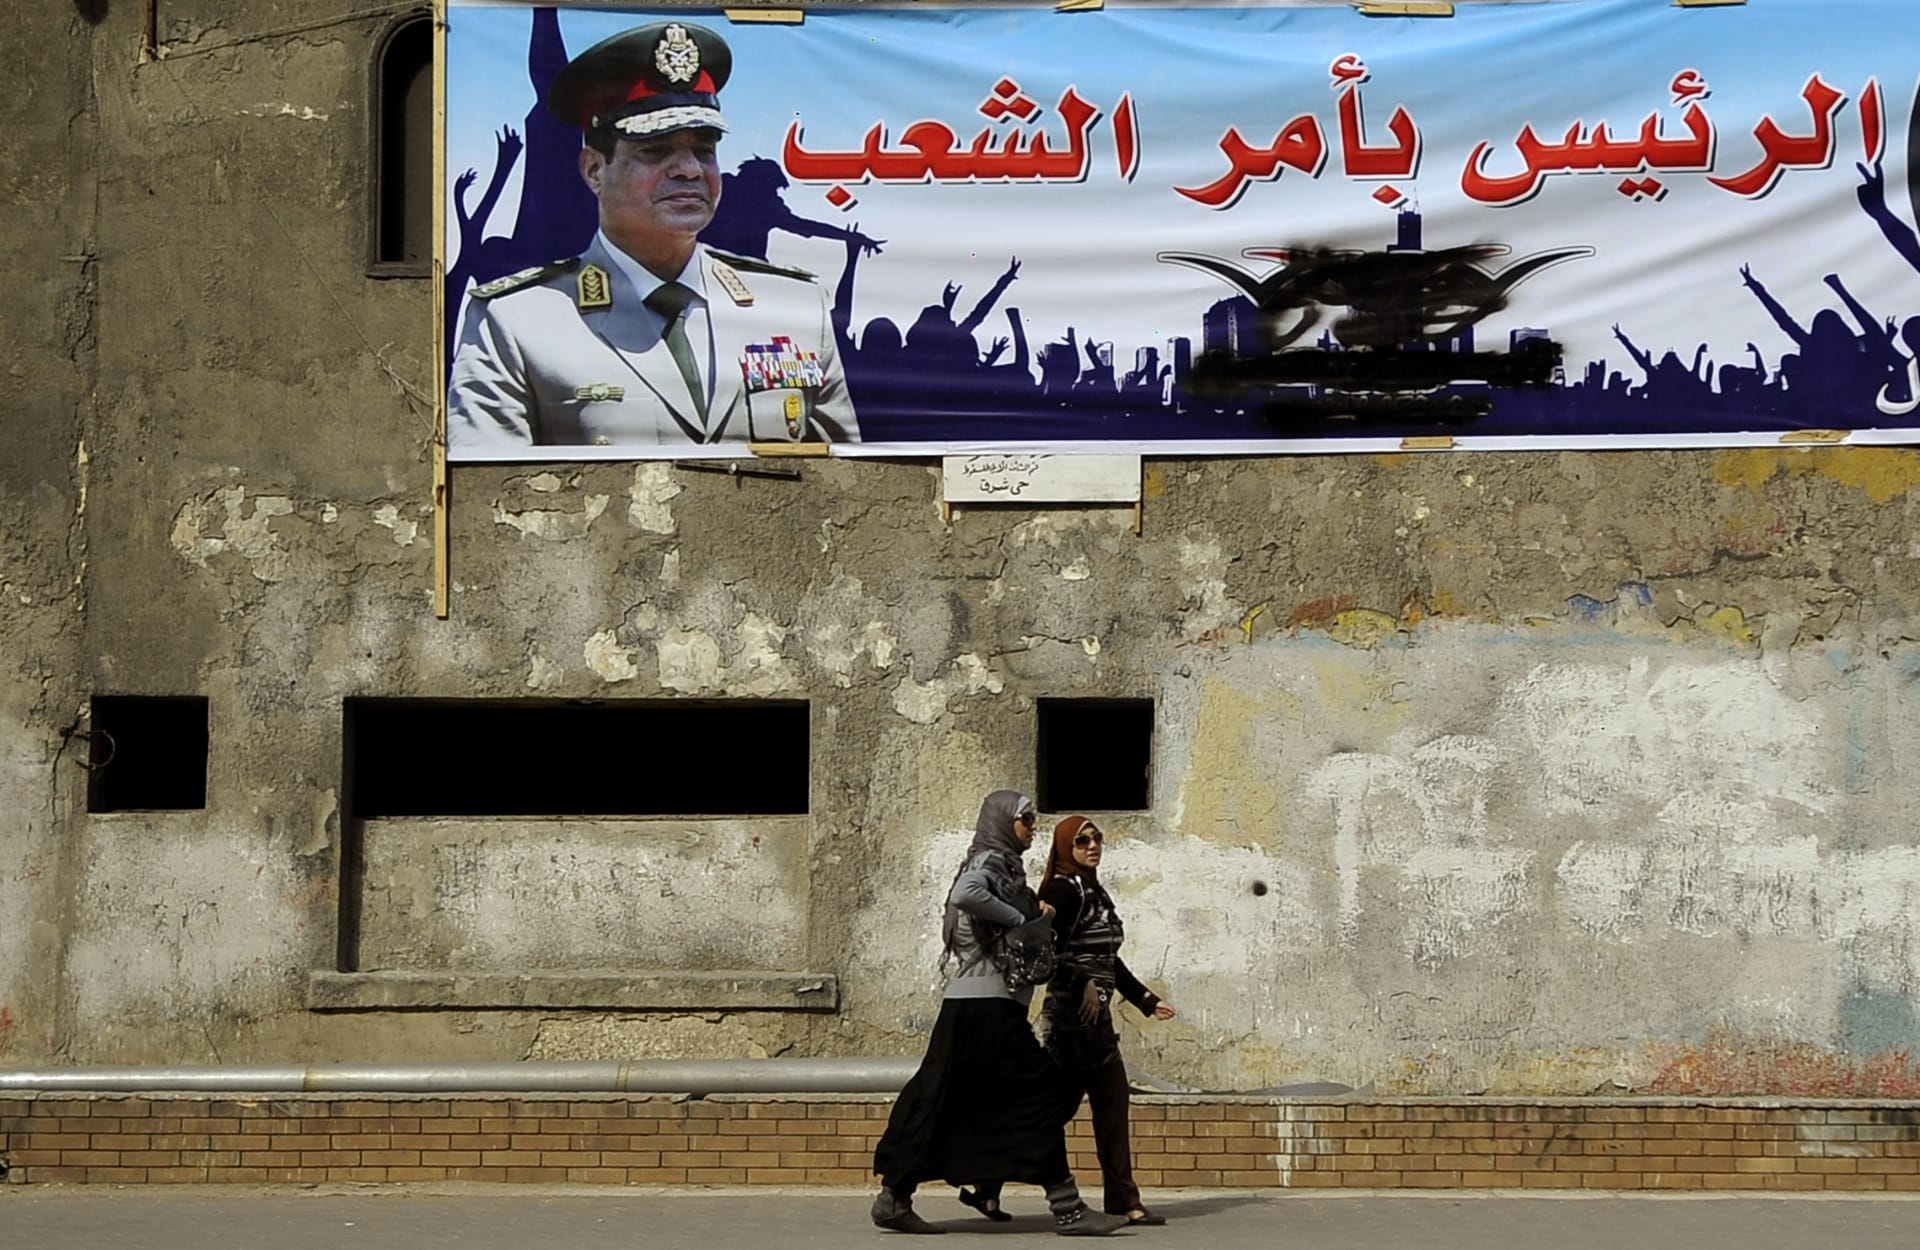 صحف: البحث عن منافس للسيسي وكوماندوز أمريكي في ليبيا